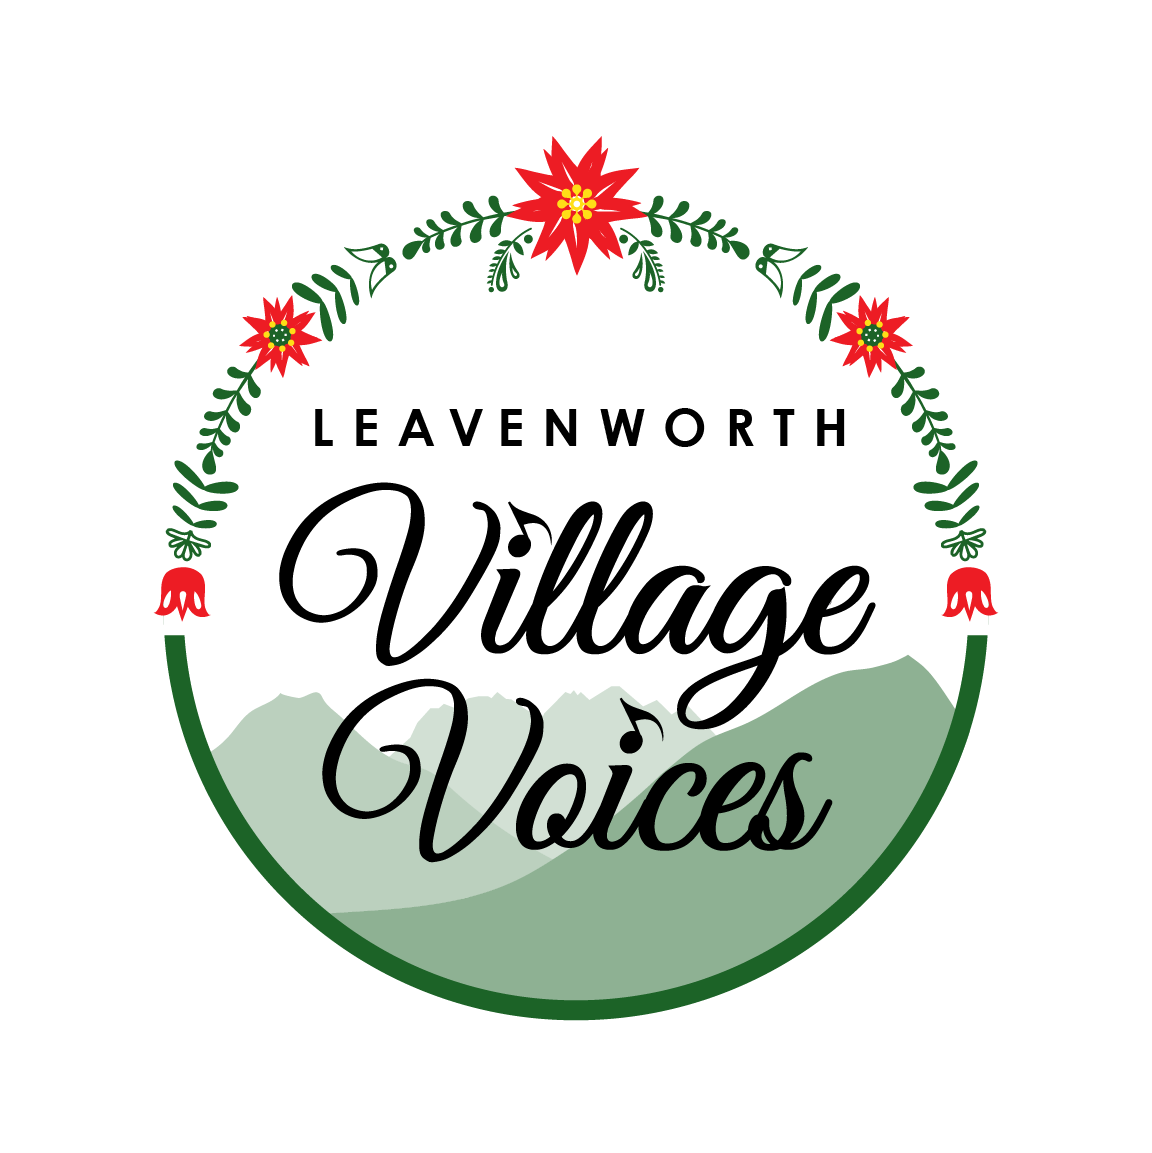 Leavenworth Village Voices logo